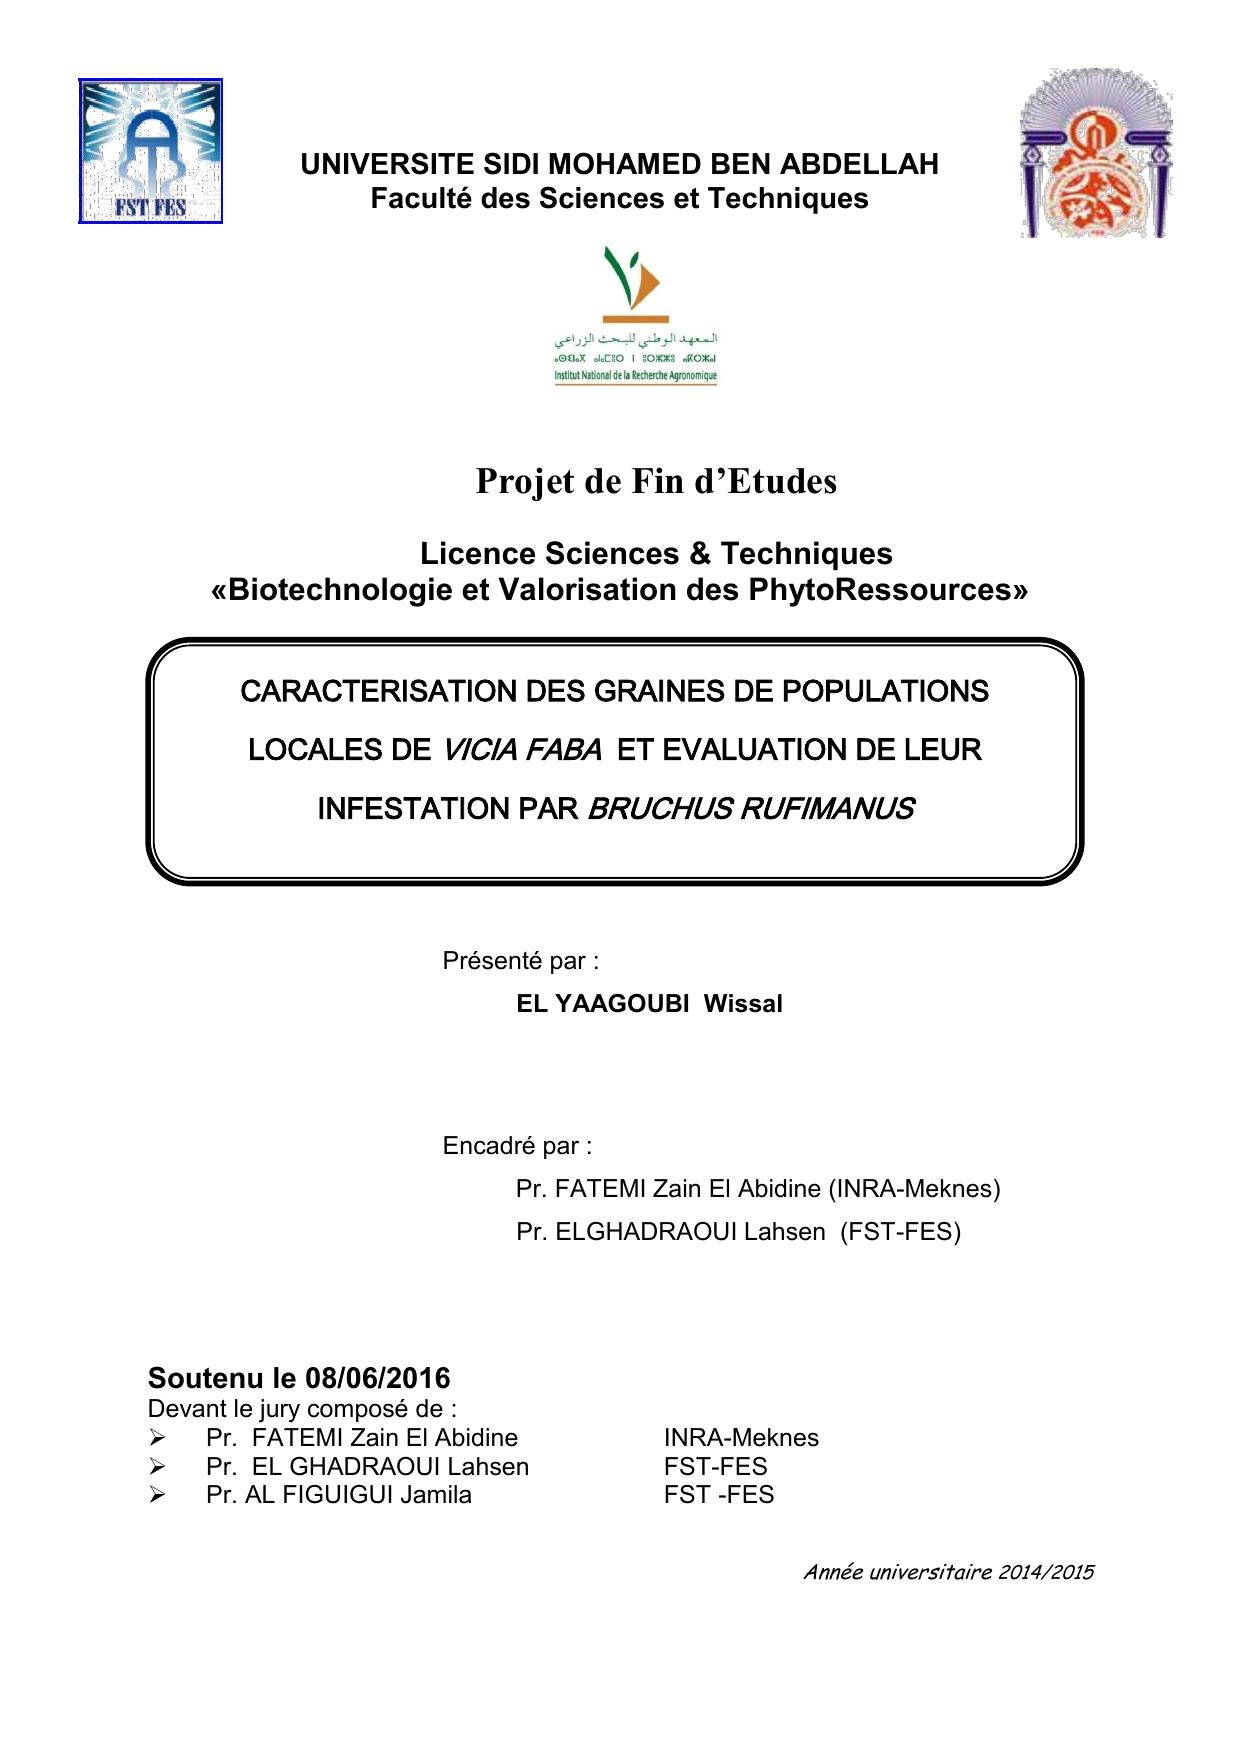 Caractérisation des graines de populations localisés de Vicia Faba et évaluation de leur infestation par Bruchus Rufimanus